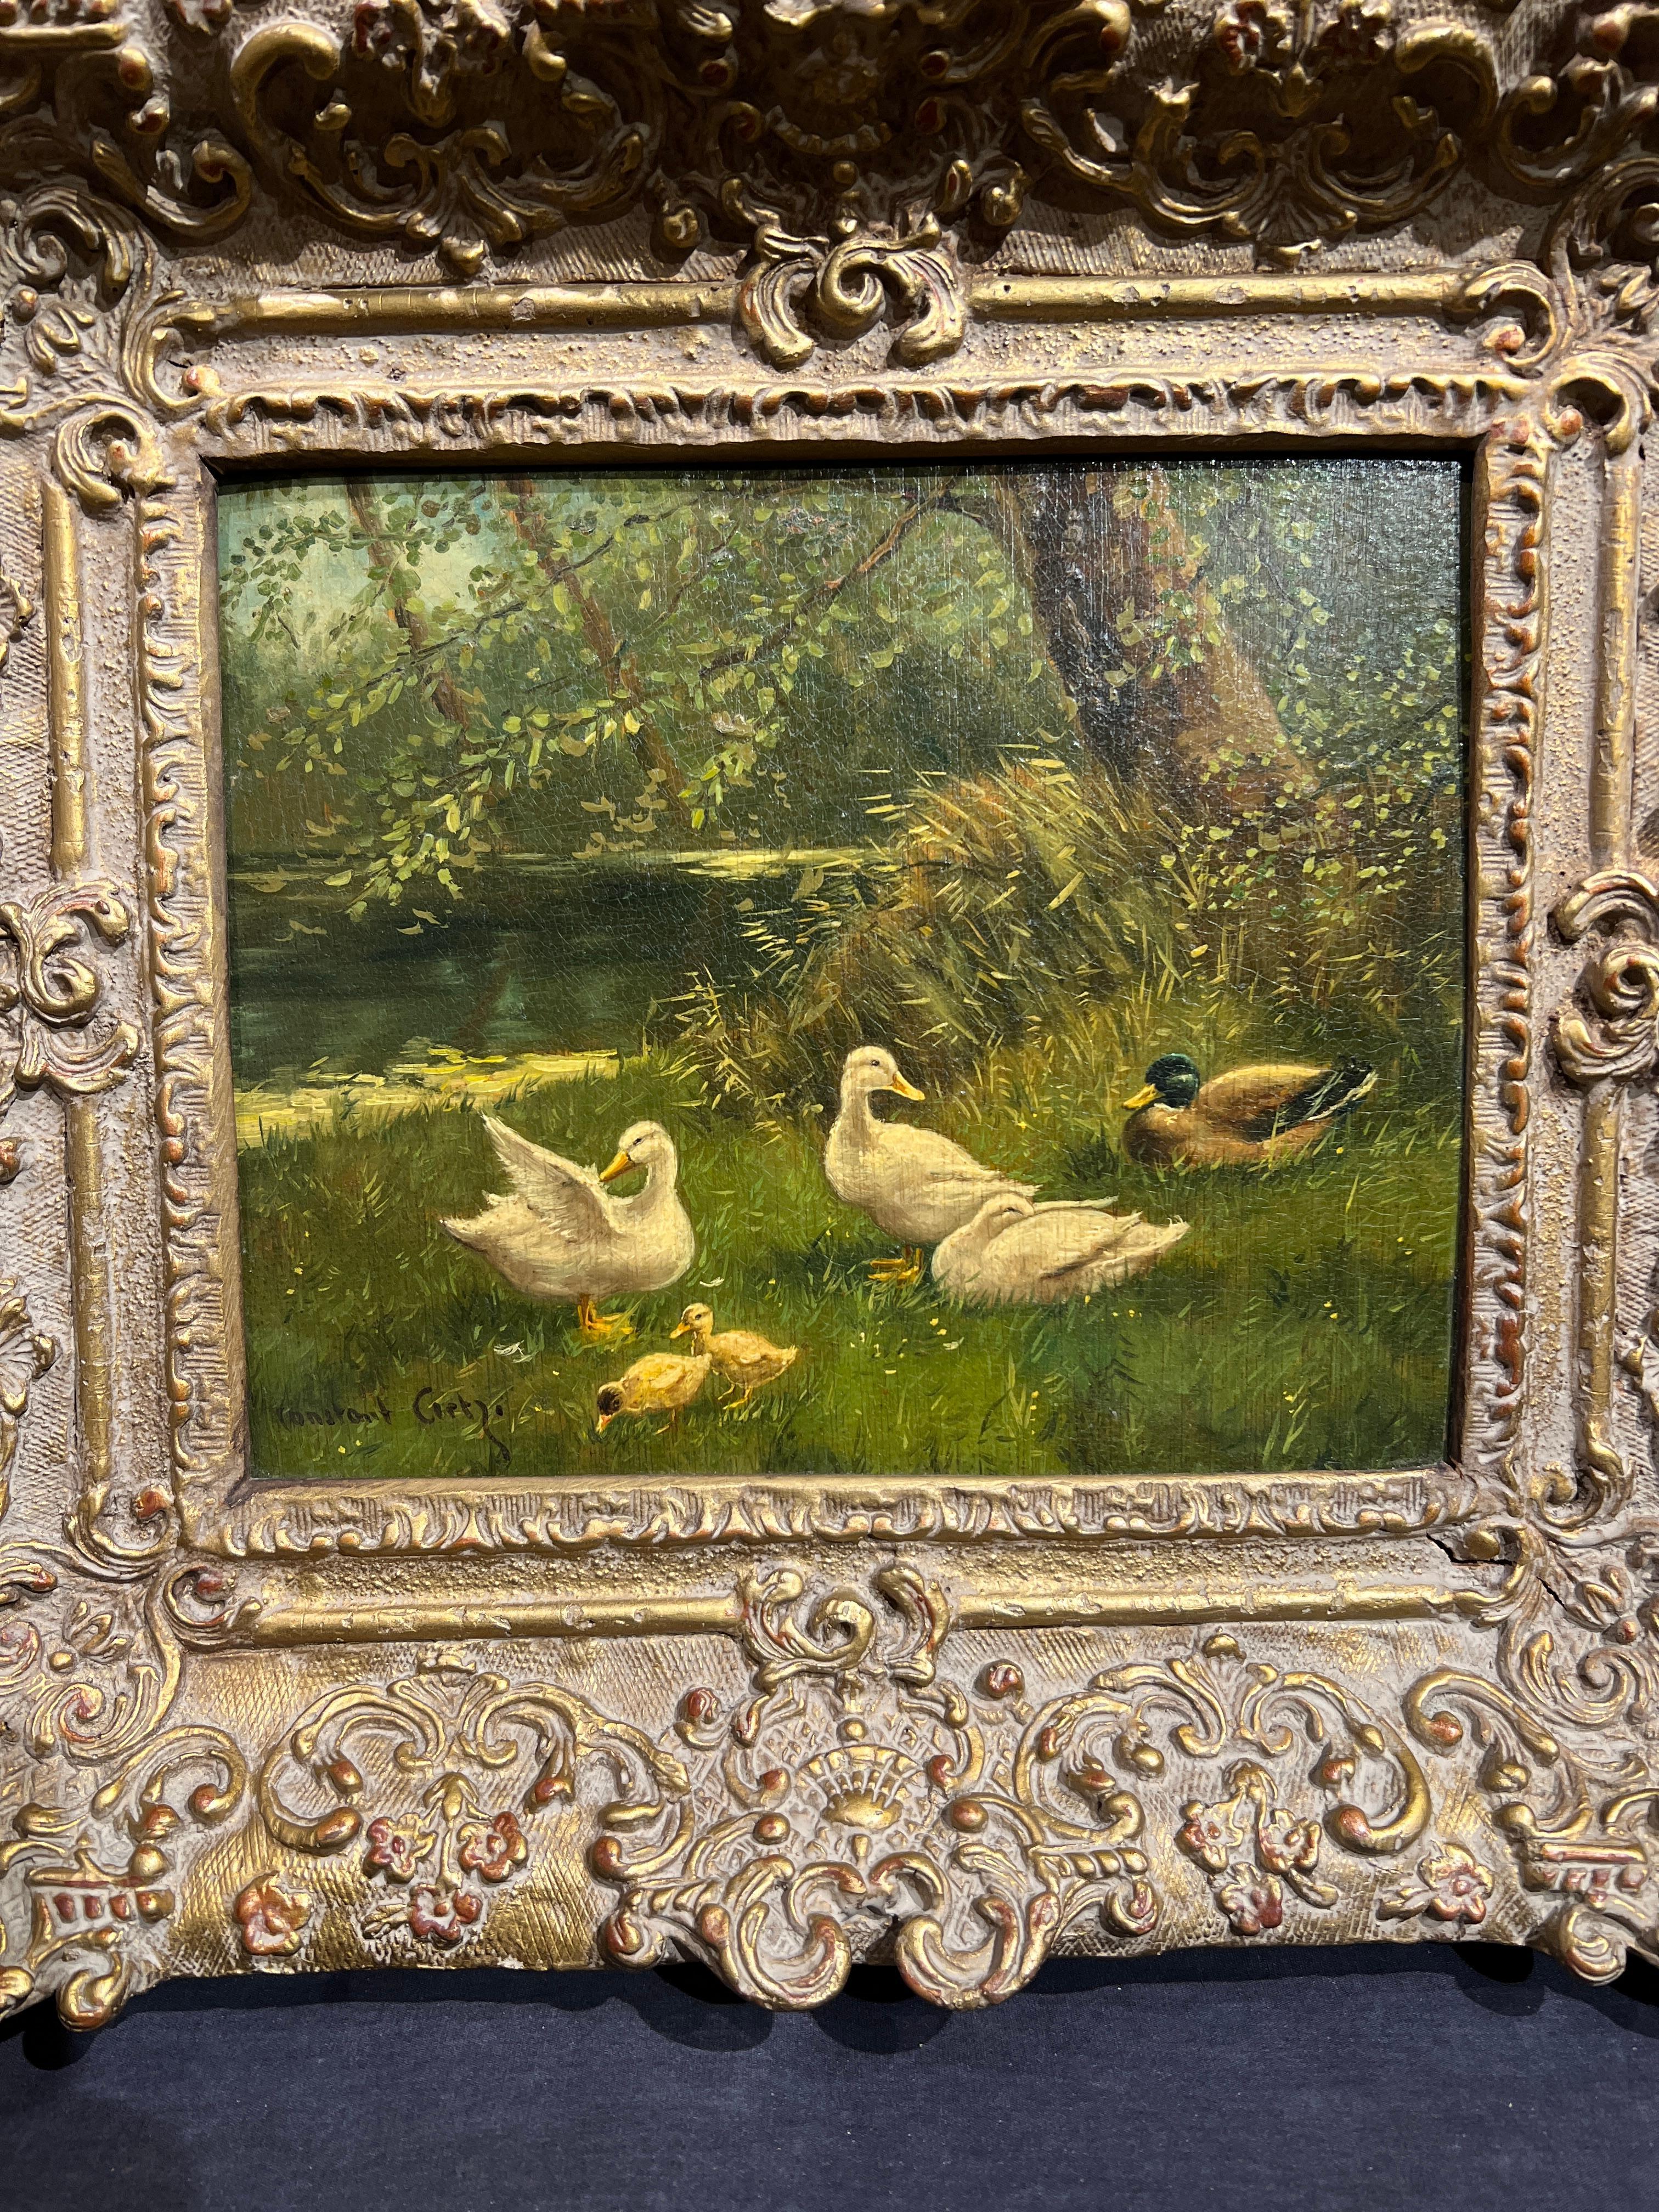 Famille de canards
Par. David Adolph Constant Artz (néerlandais, 1837-1890)
Signé en bas à gauche
Sans cadre : 9